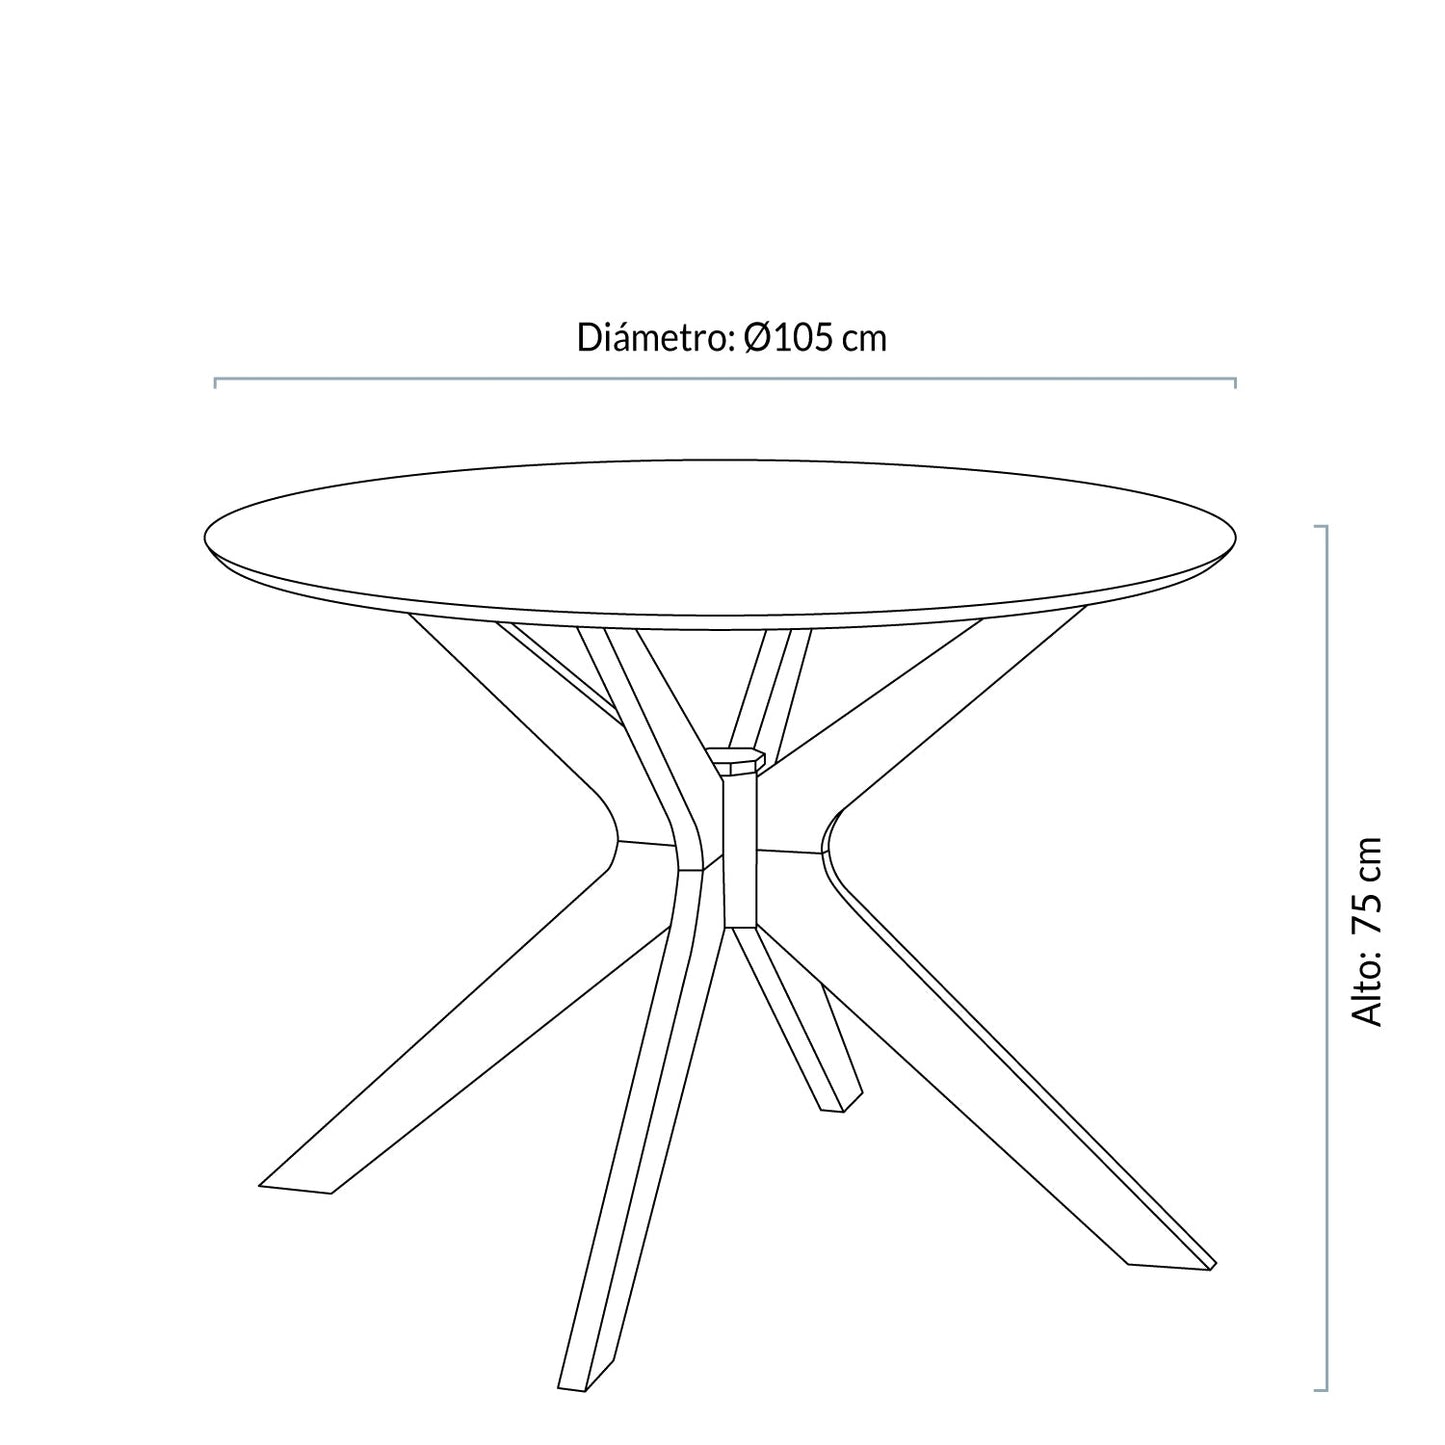 mesa-de-comedor-duncan-redonda-natural-form-design